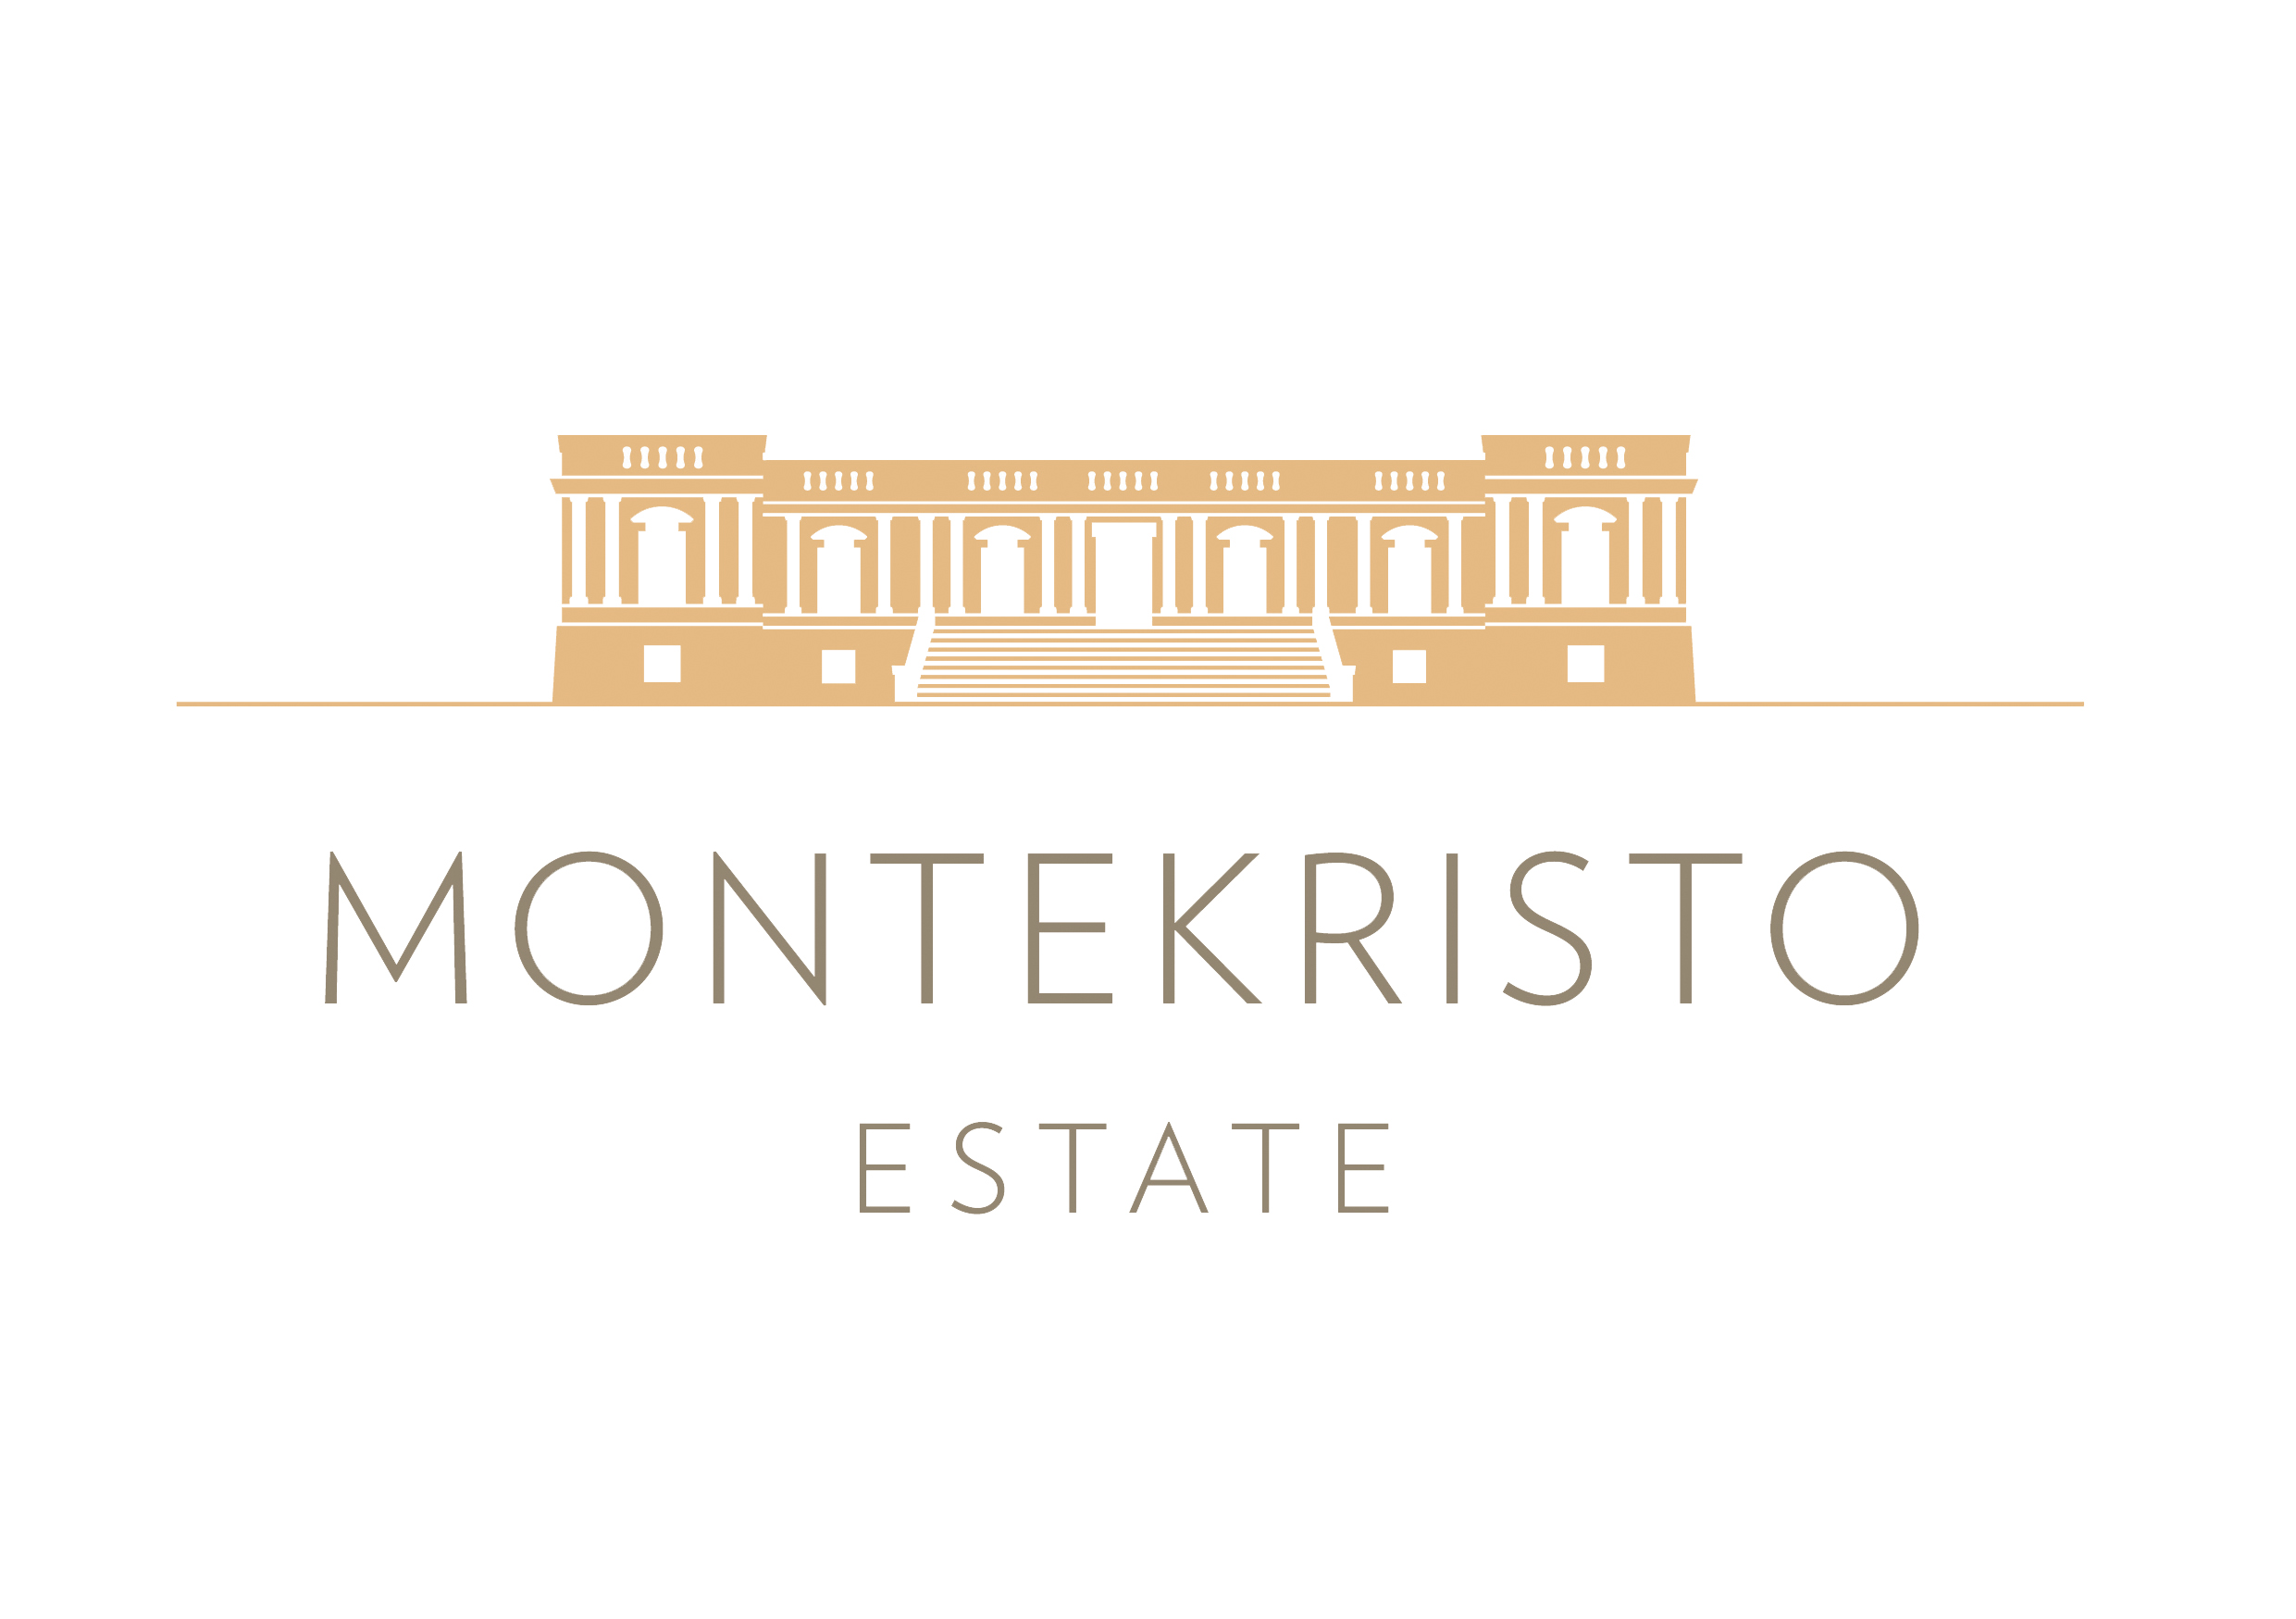 Montekristo Estate Ltd